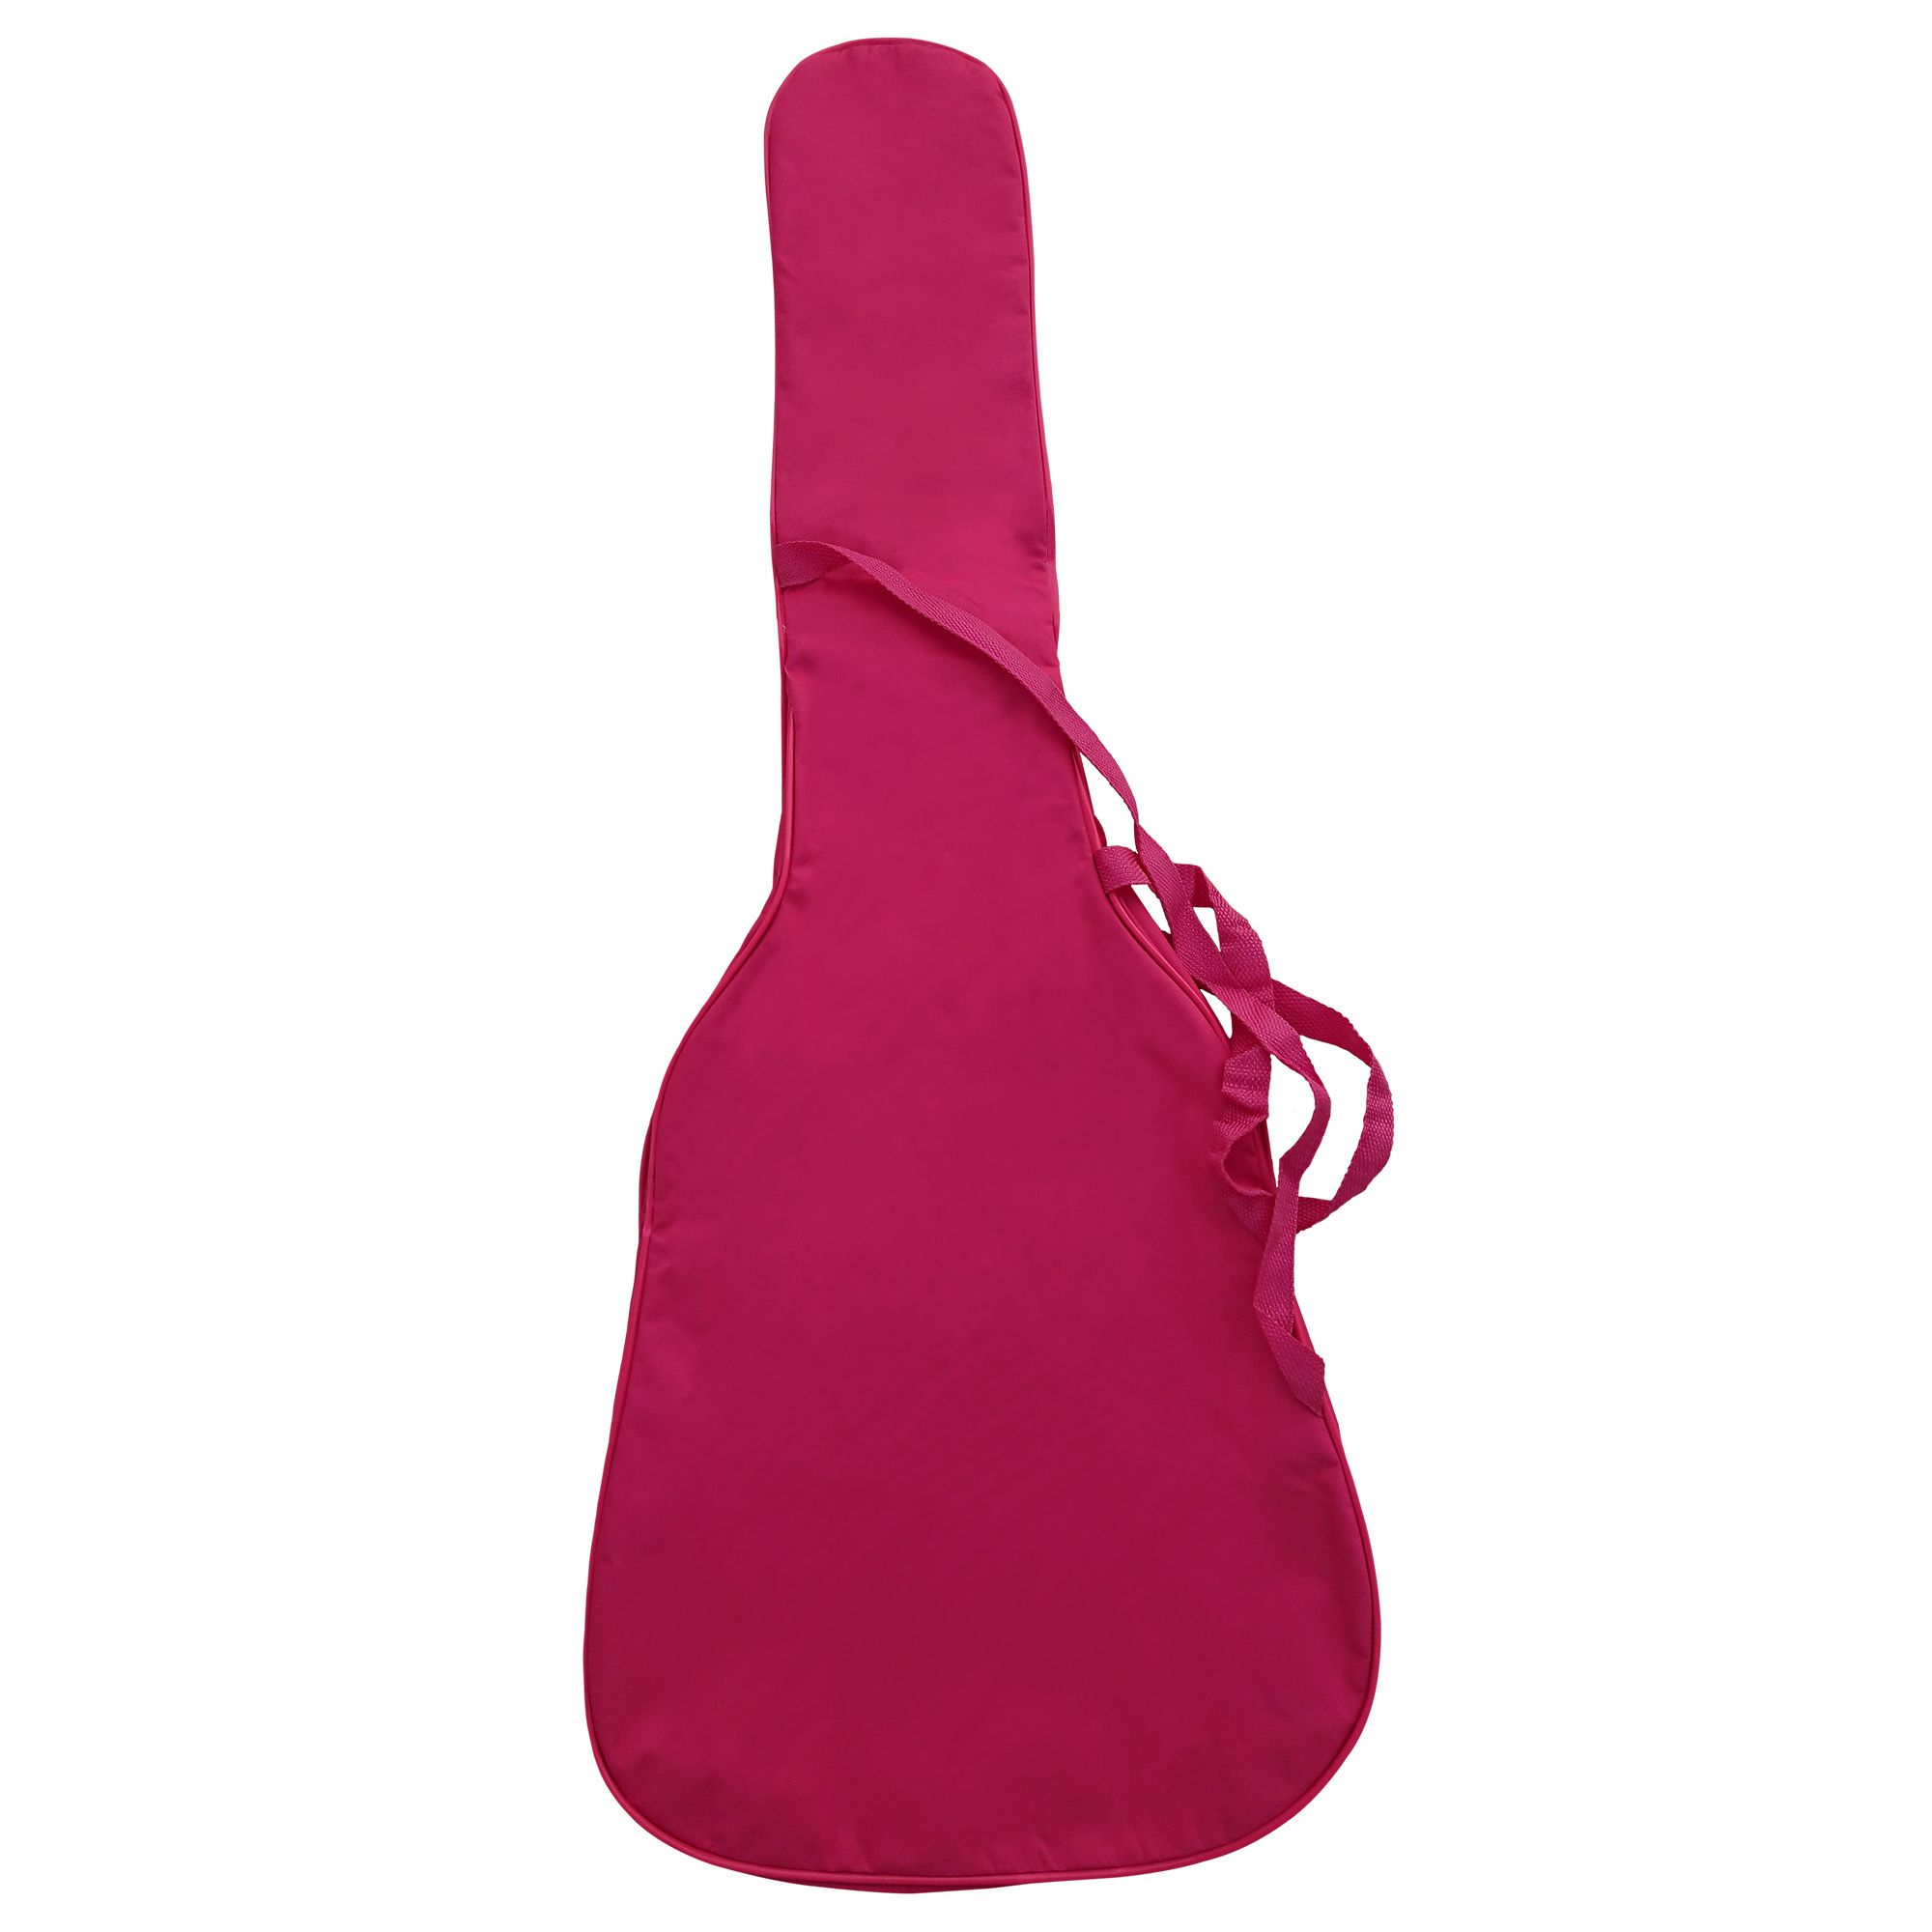 Capa Bag Para Violão Clássico Rosa Comum CLAVE & BAG. No formato do violão, alça de mão e tira colo. CMR502